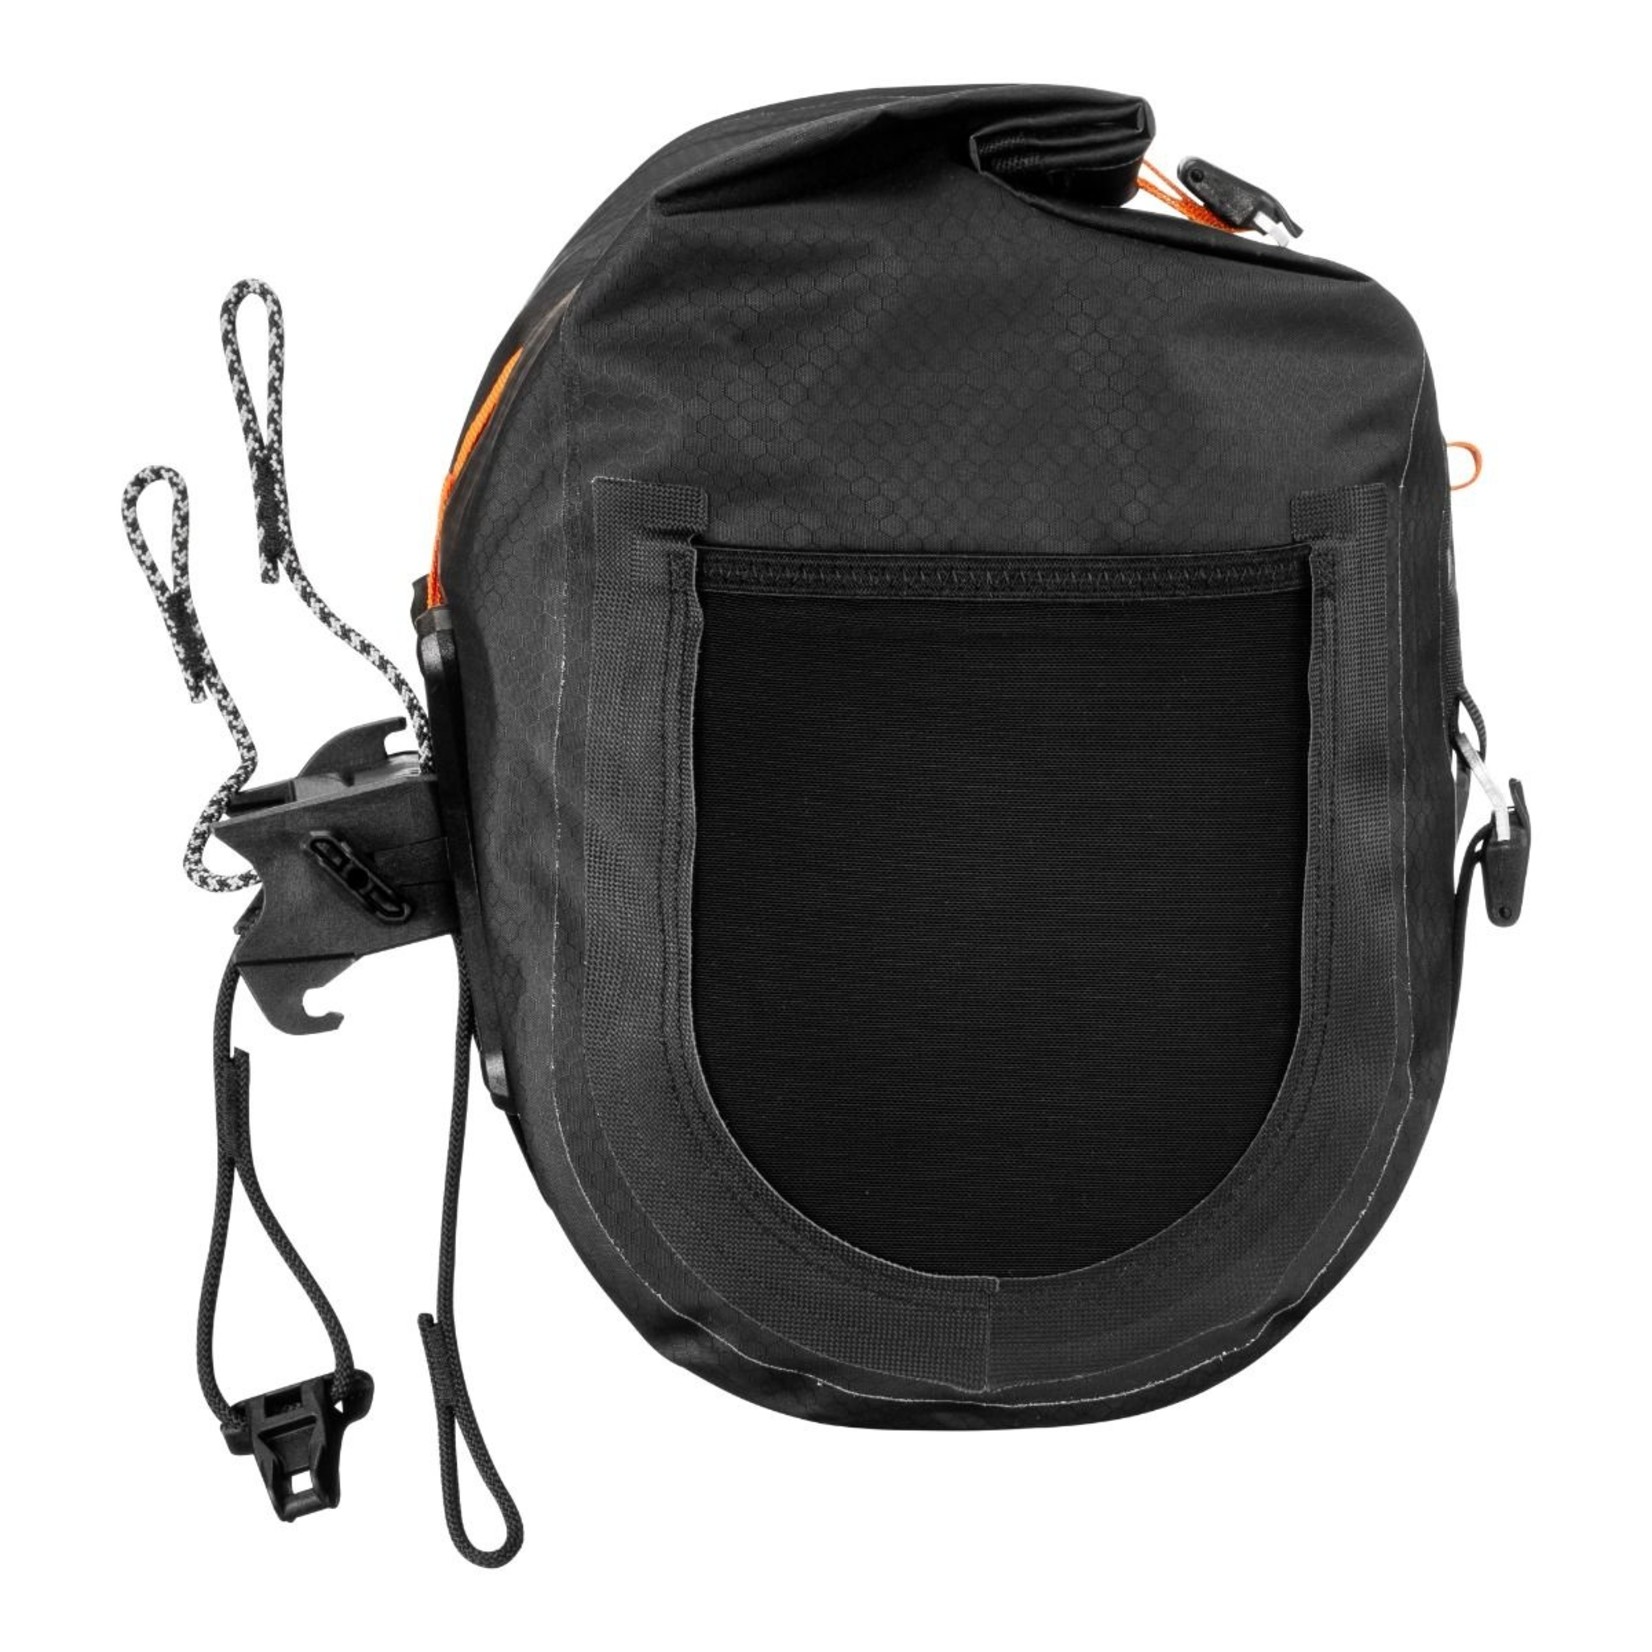 Ortlieb New Ortlieb Handlebar-Pack QR F9923 - Black Matt -Waterproof